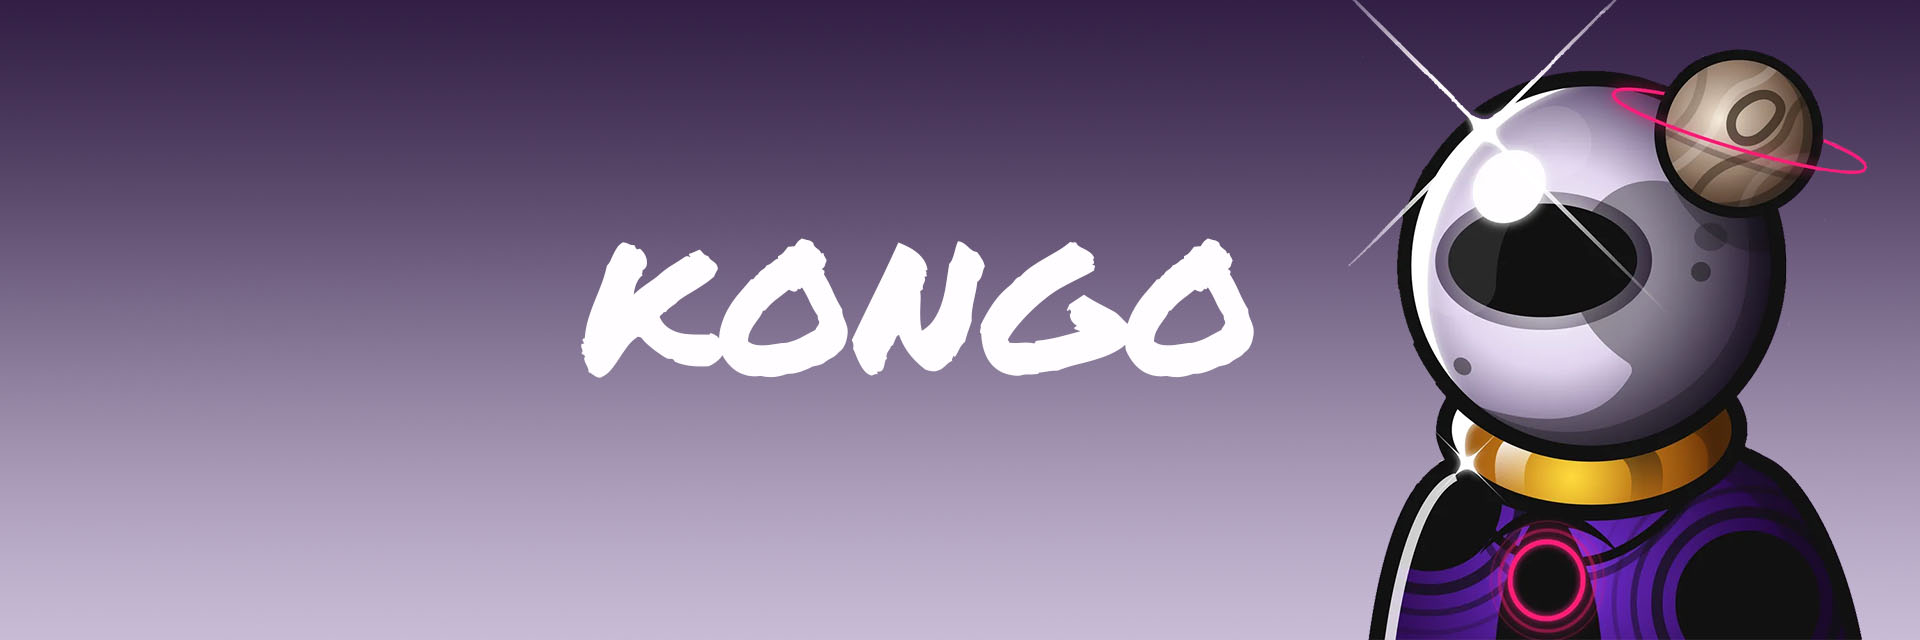 kongonongo banner